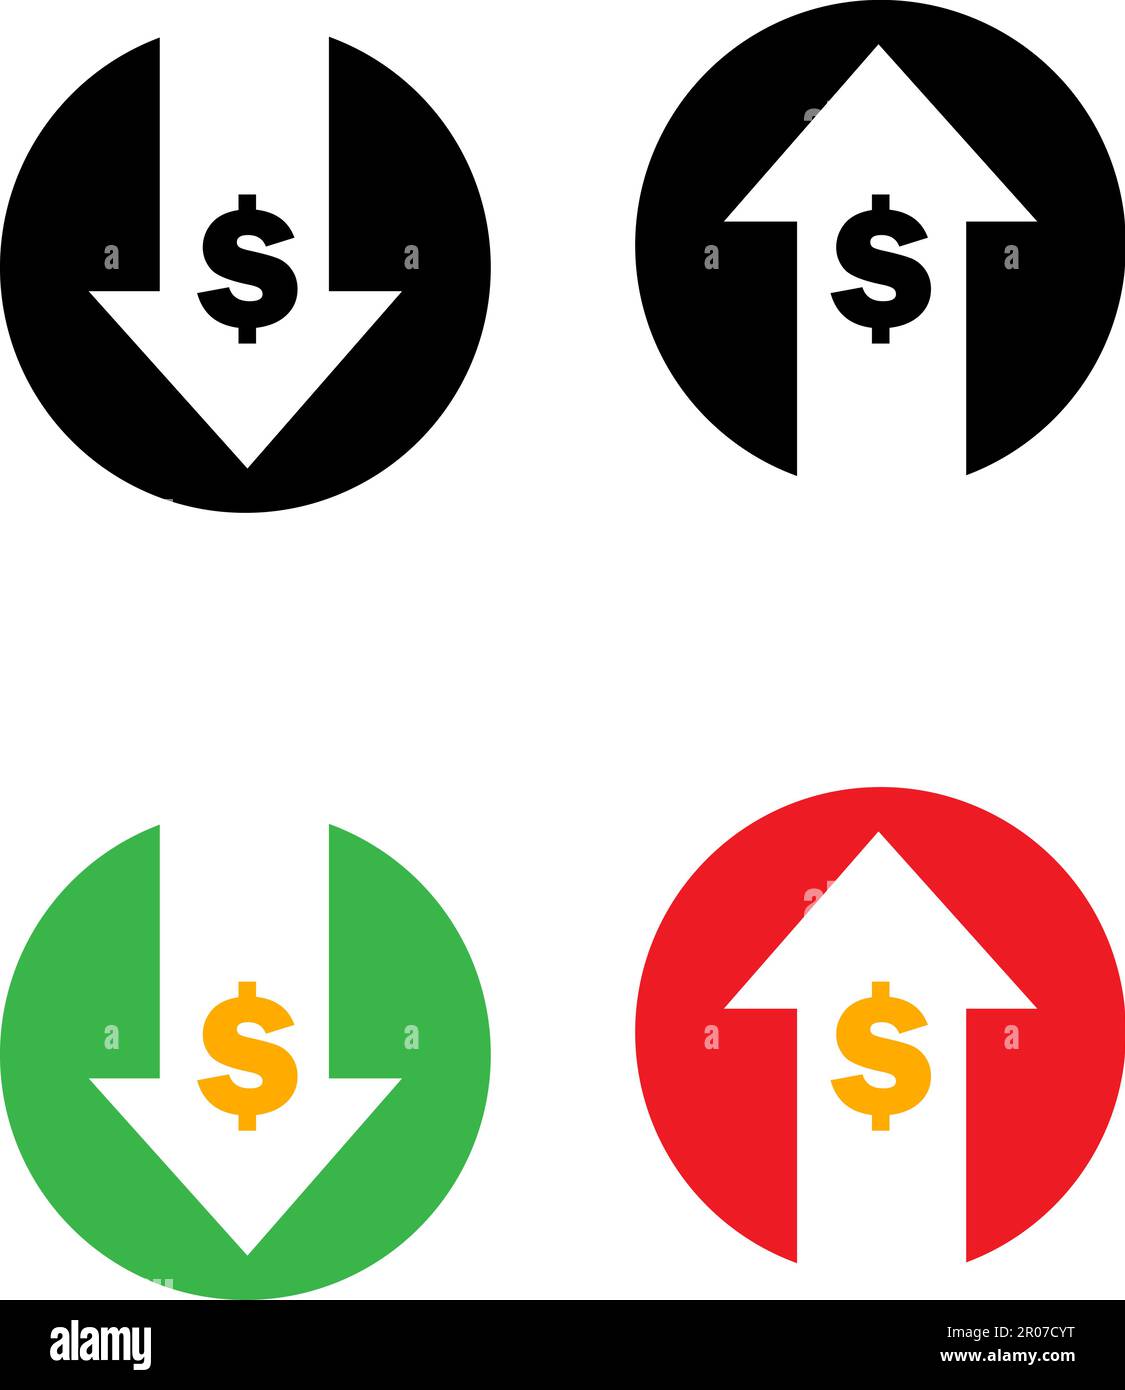 Satz von Kostensymbol Symbol für Erhöhung und Verringerung des Betrags, Geld, Dollarzeichen mit Pfeil nach oben und unten abgerundetes schwarzes Vektorsymbol Stock Vektor